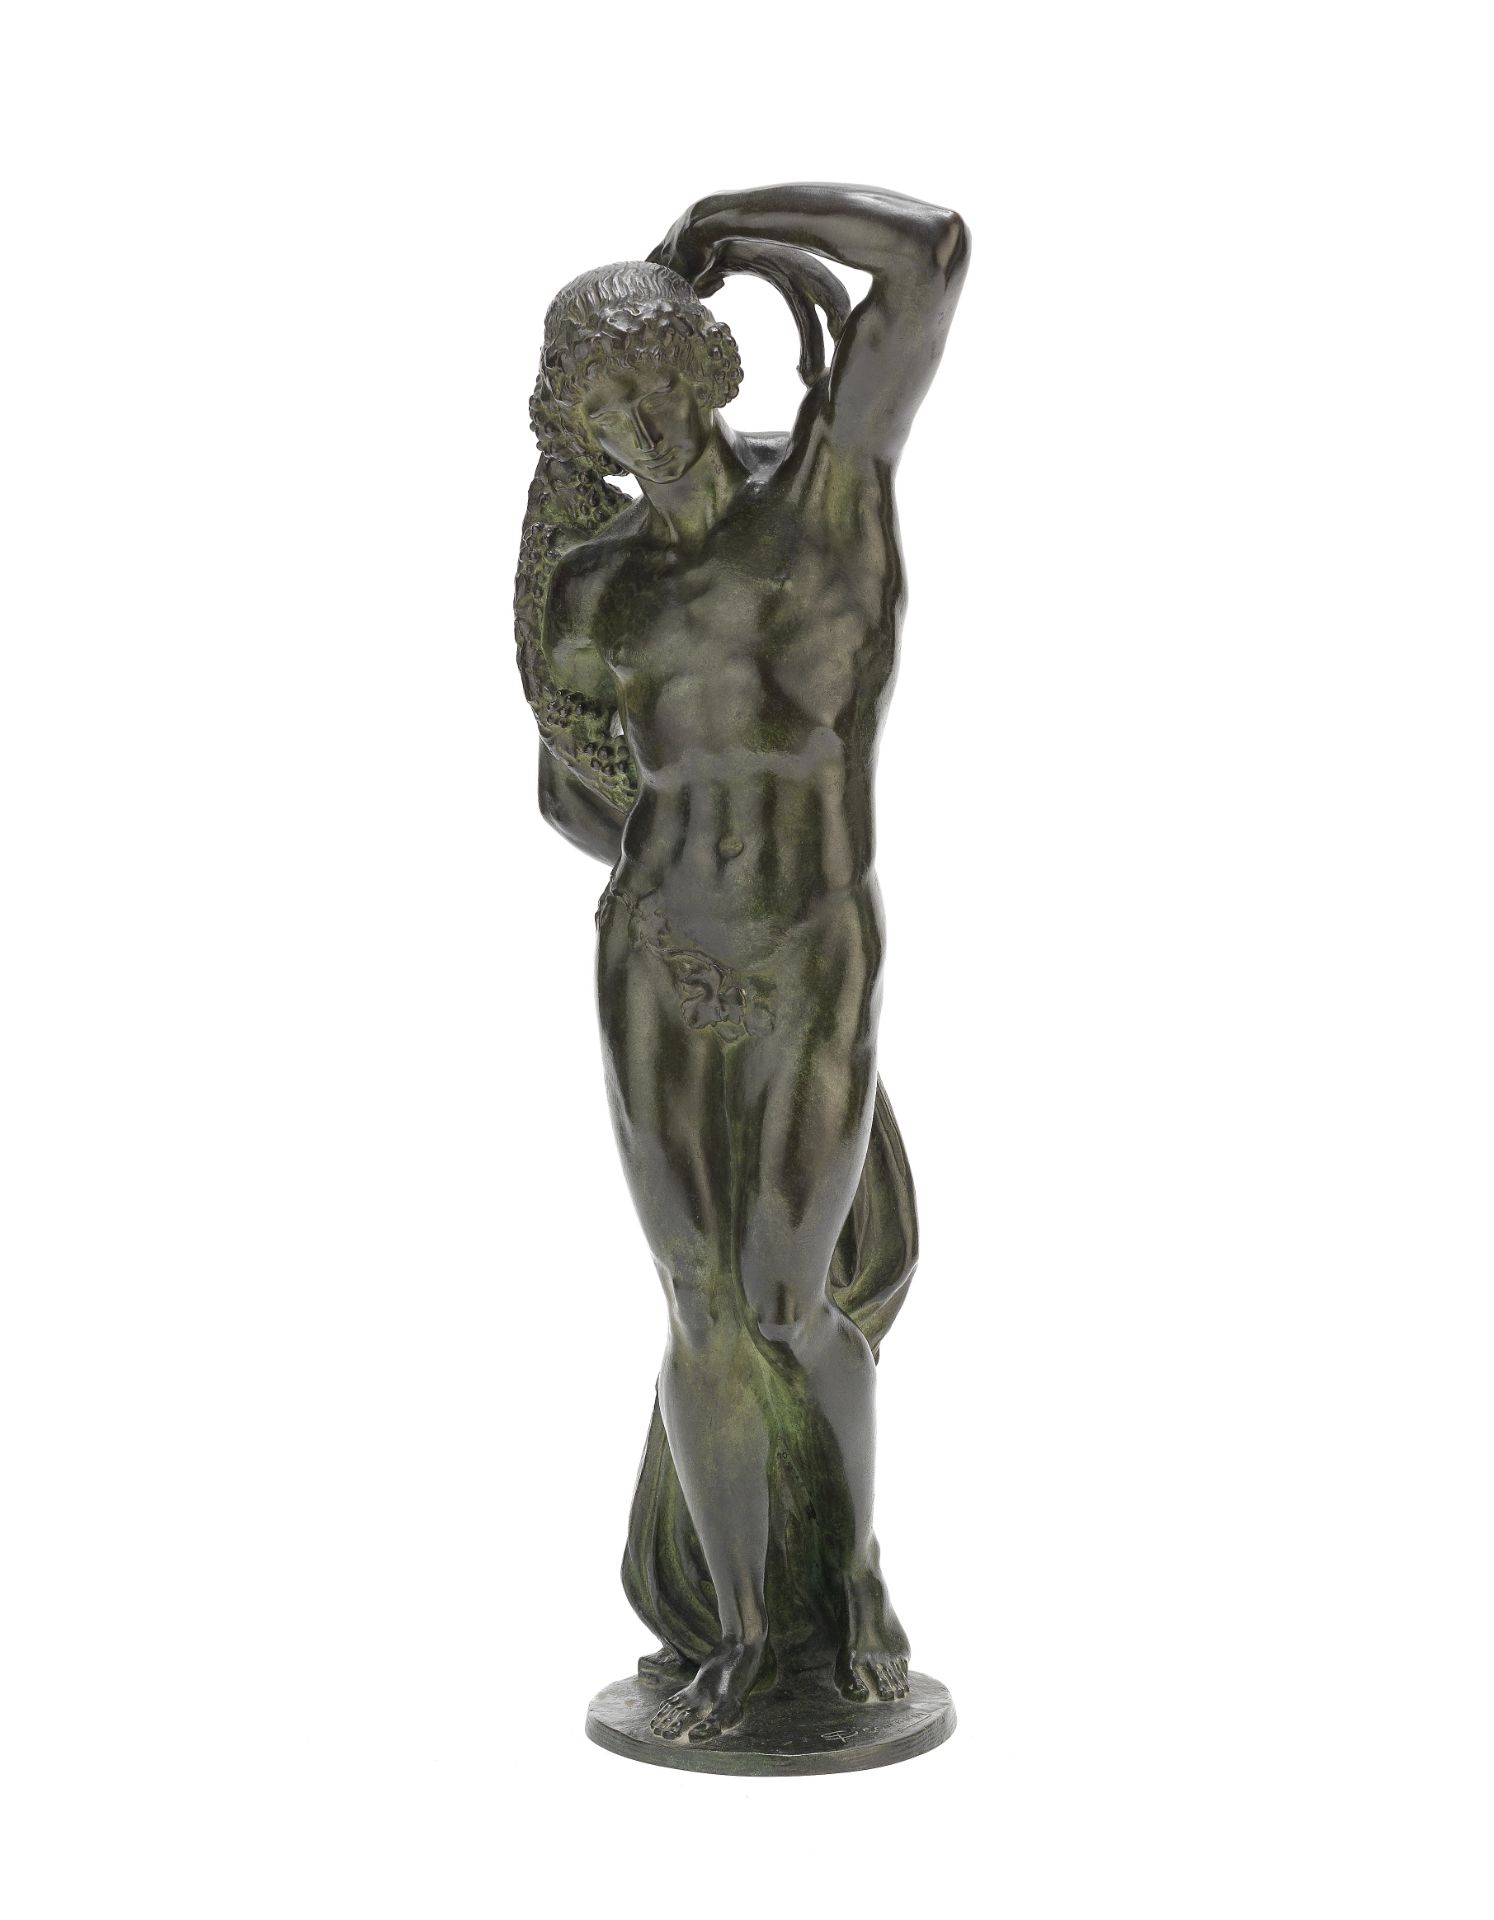 Joseph J. Emmanuel (Descomps) Cormier (1869-1950): A bronze figure of Bacchus